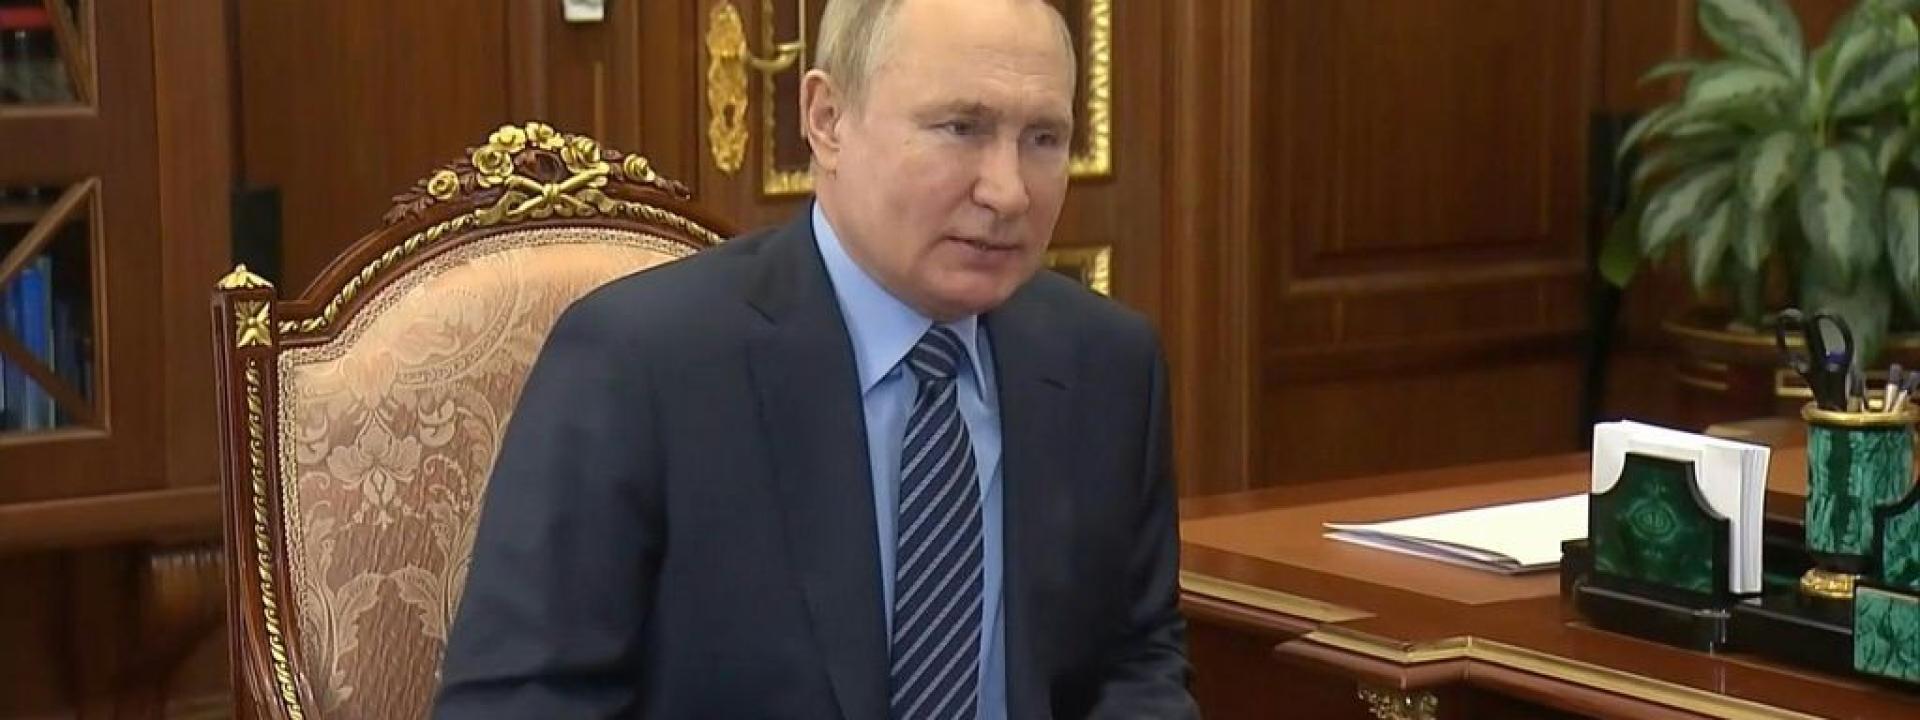 Crisi Ucraina, Putin non parteciperà alla Conferenza di Monaco